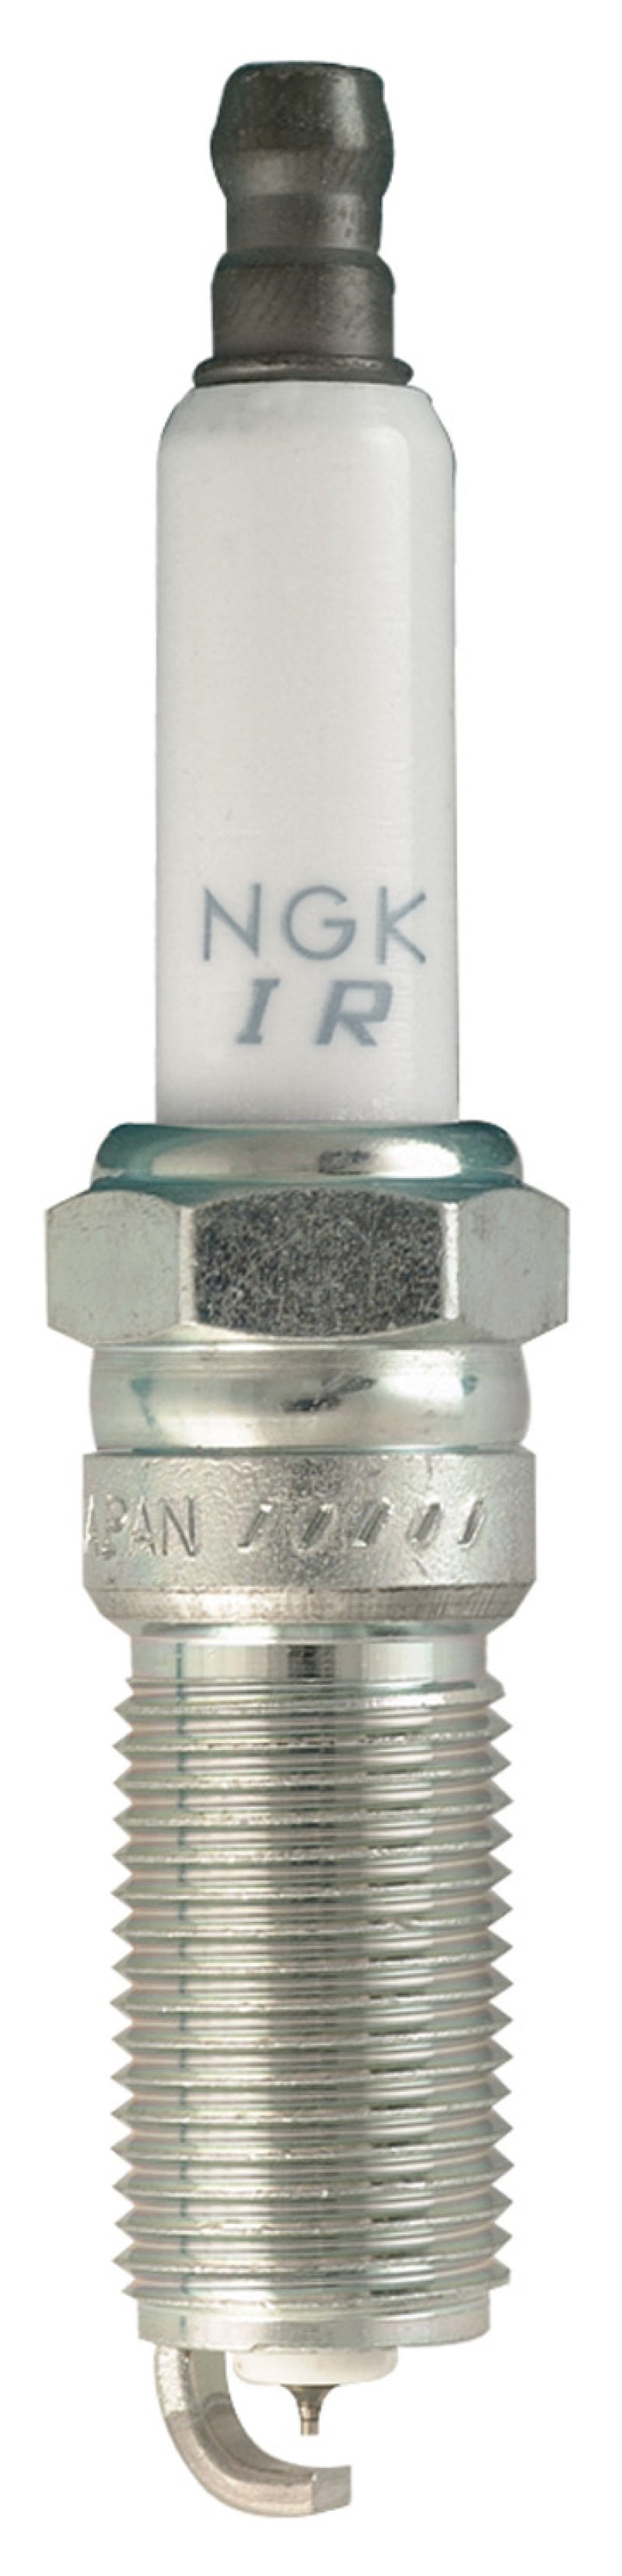 NGK Iridium/Platinum Spark Plug Box of 4 (ILTR5E11) - eliteracefab.com